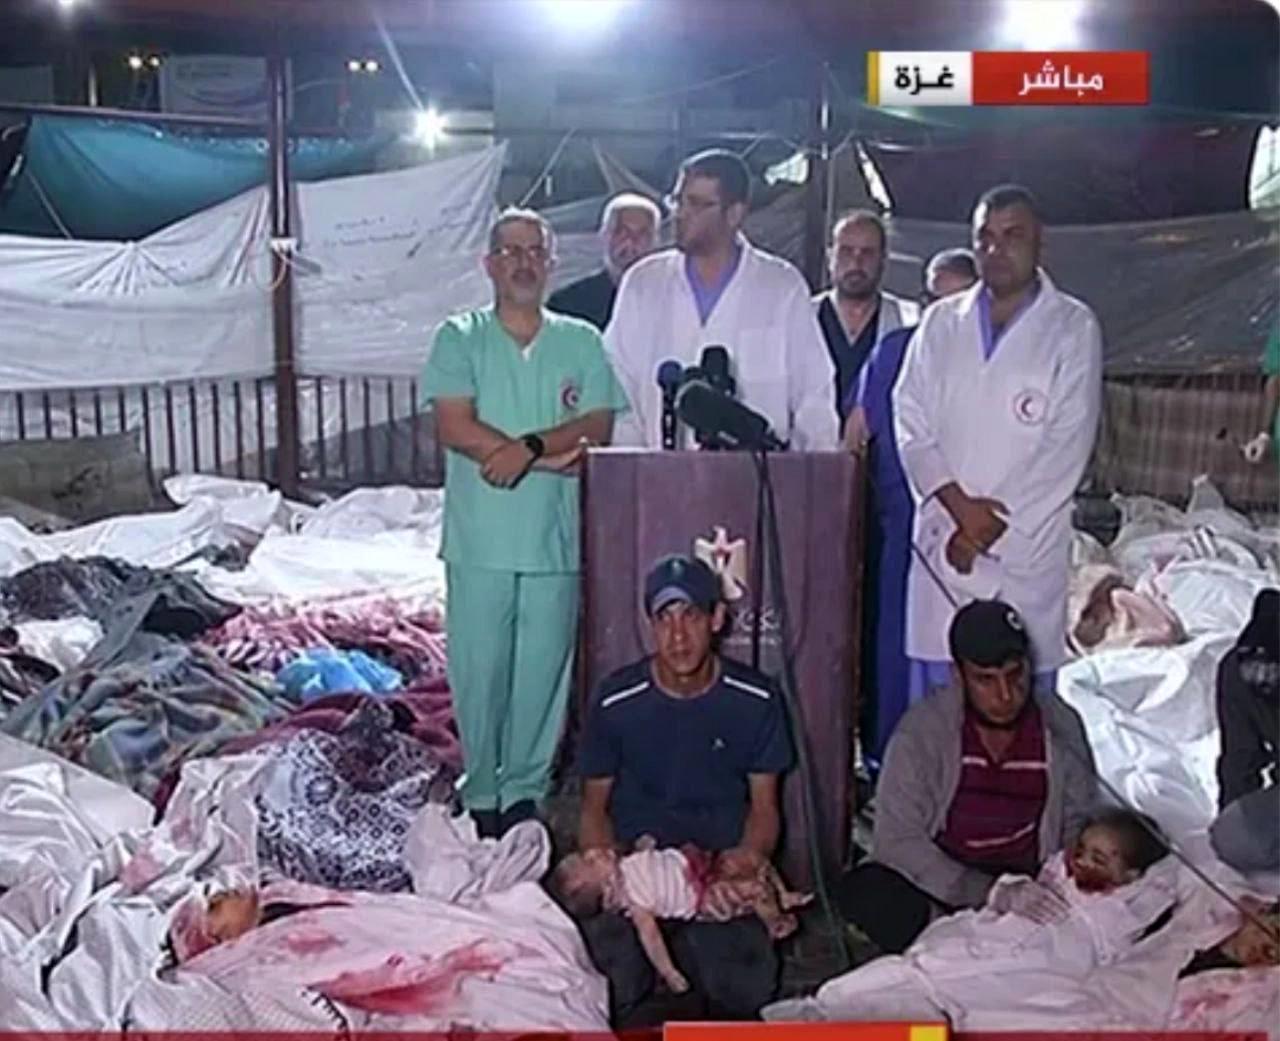 ویران کننده ترین  تصویر   از بمباران بیمارستان غزه / (حاوی تصاویر دلخراش )